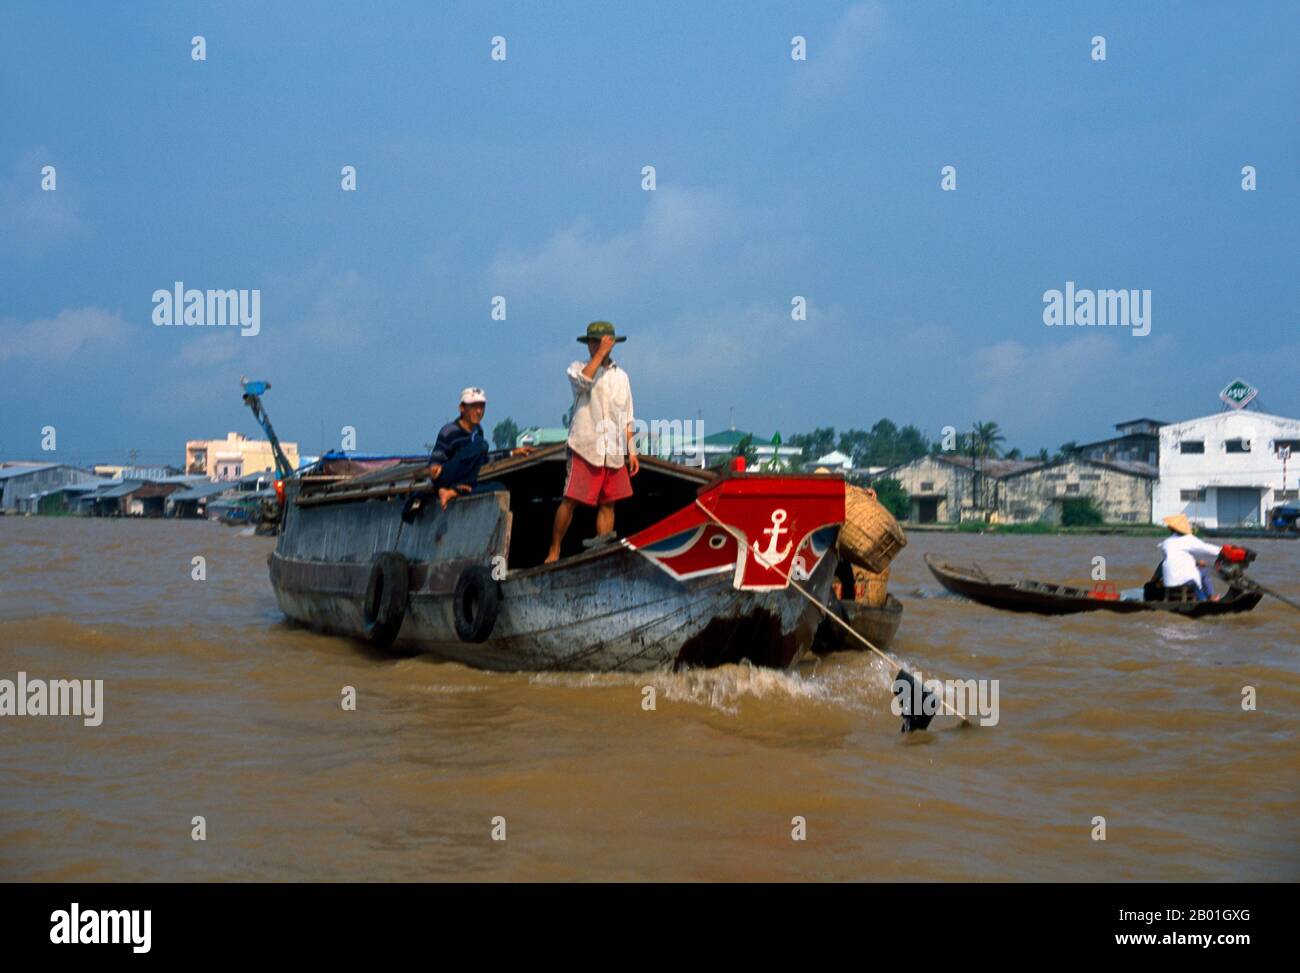 Vietnam: Schwimmender Markt Cai Rang, in der Nähe von Can Tho, Mekong Delta. Südvietnam wird von den reichen landwirtschaftlichen Flächen des Mekong-Deltas dominiert, dem Hauptlieferanten der Reis-, Obst- und Gemüseproduktion des Landes. Das Land ist schwammig und tief gelegen, mit Sumpfgebieten und Mangrovenwäldern im Westen und Süden. Während der Regenzeit bedeckt das Wasser ein Drittel des Deltas mit Überschwemmungen von bis zu 4 m (13 ft). An einigen Stellen dringt Salzwasser bis zu 30 m (48 km) in das Delta ein. Obwohl es außergewöhnlich fruchtbar ist, müssen Teile des Deltas noch angebaut werden. Stockfoto